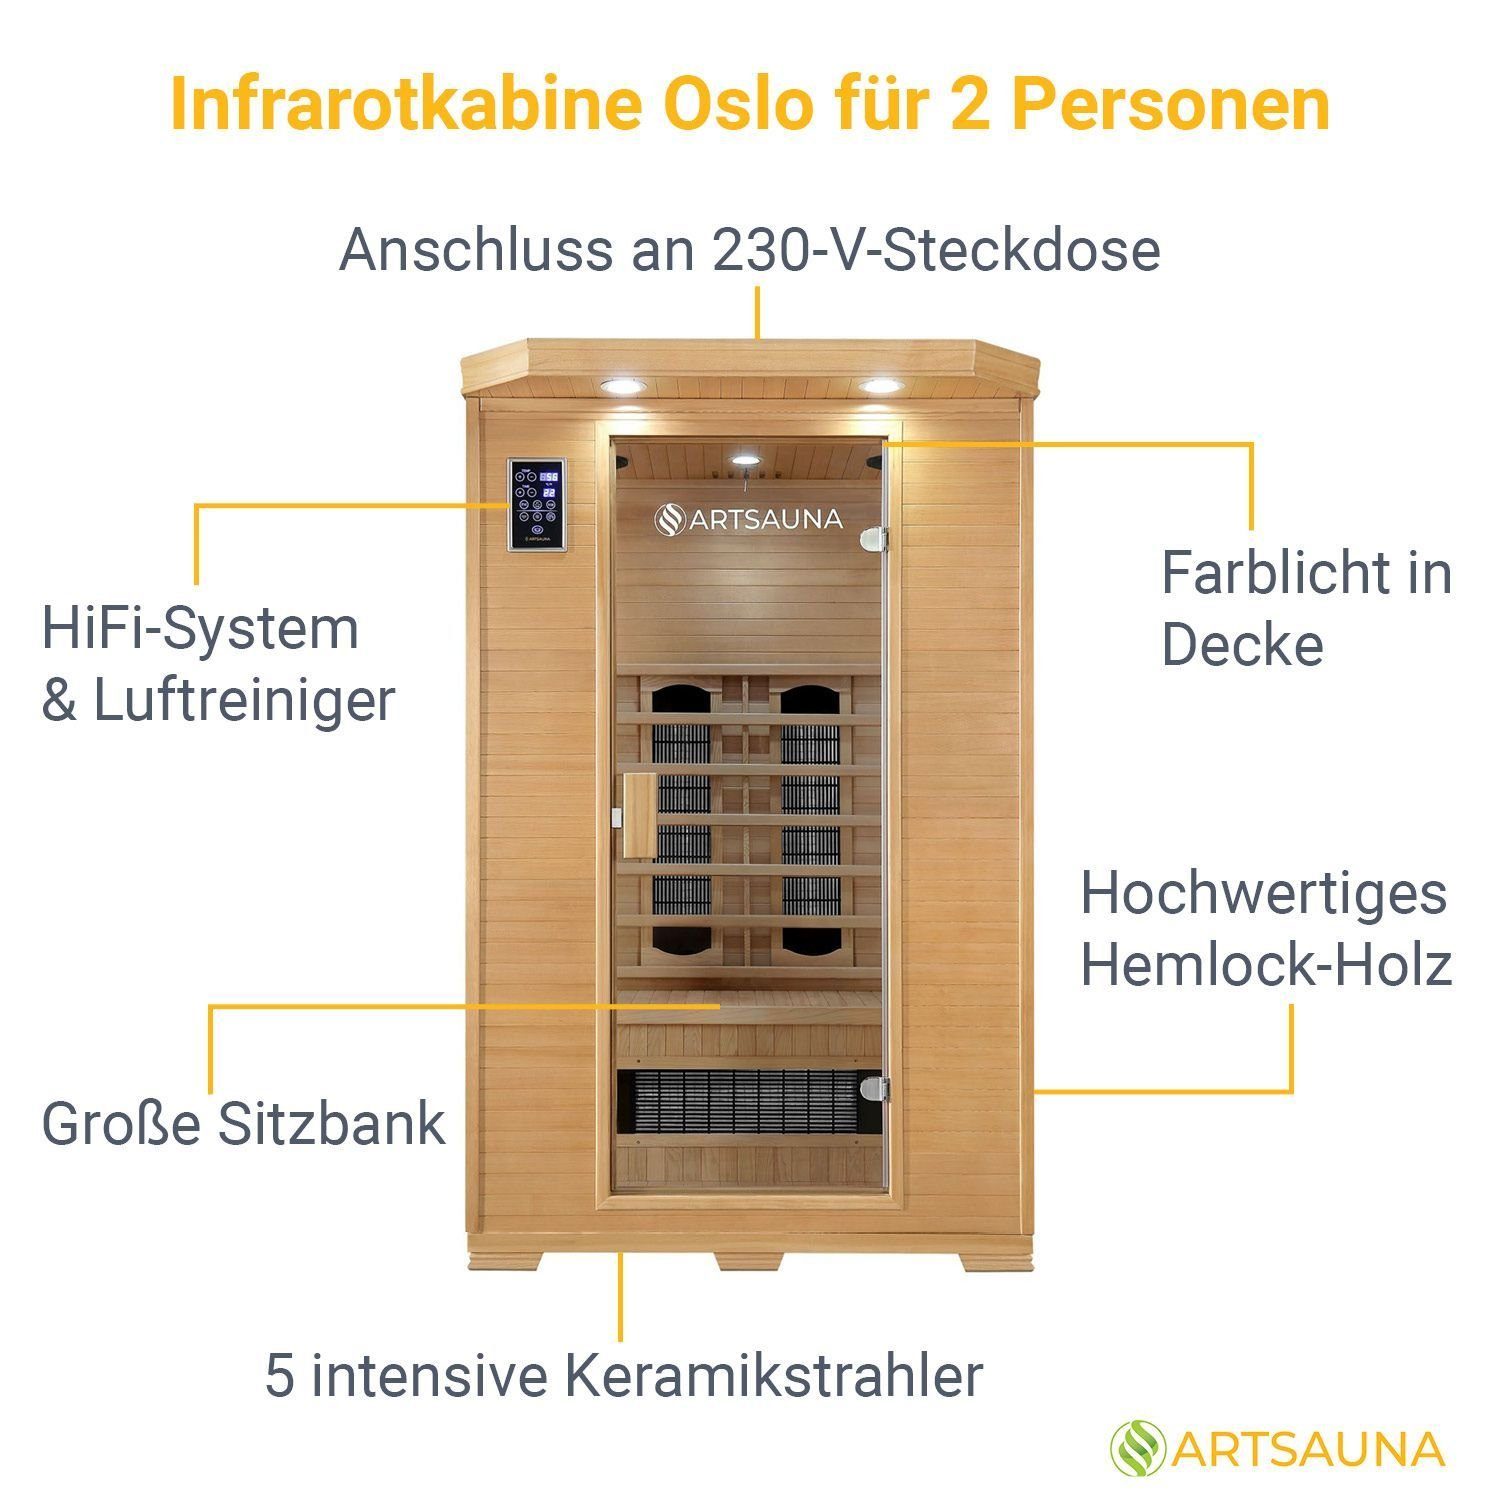 2 HiFi-System, LED-Farblicht Artsauna Personen, Hemlock-Holz, für Infrarotkabine Ionisator, Oslo,